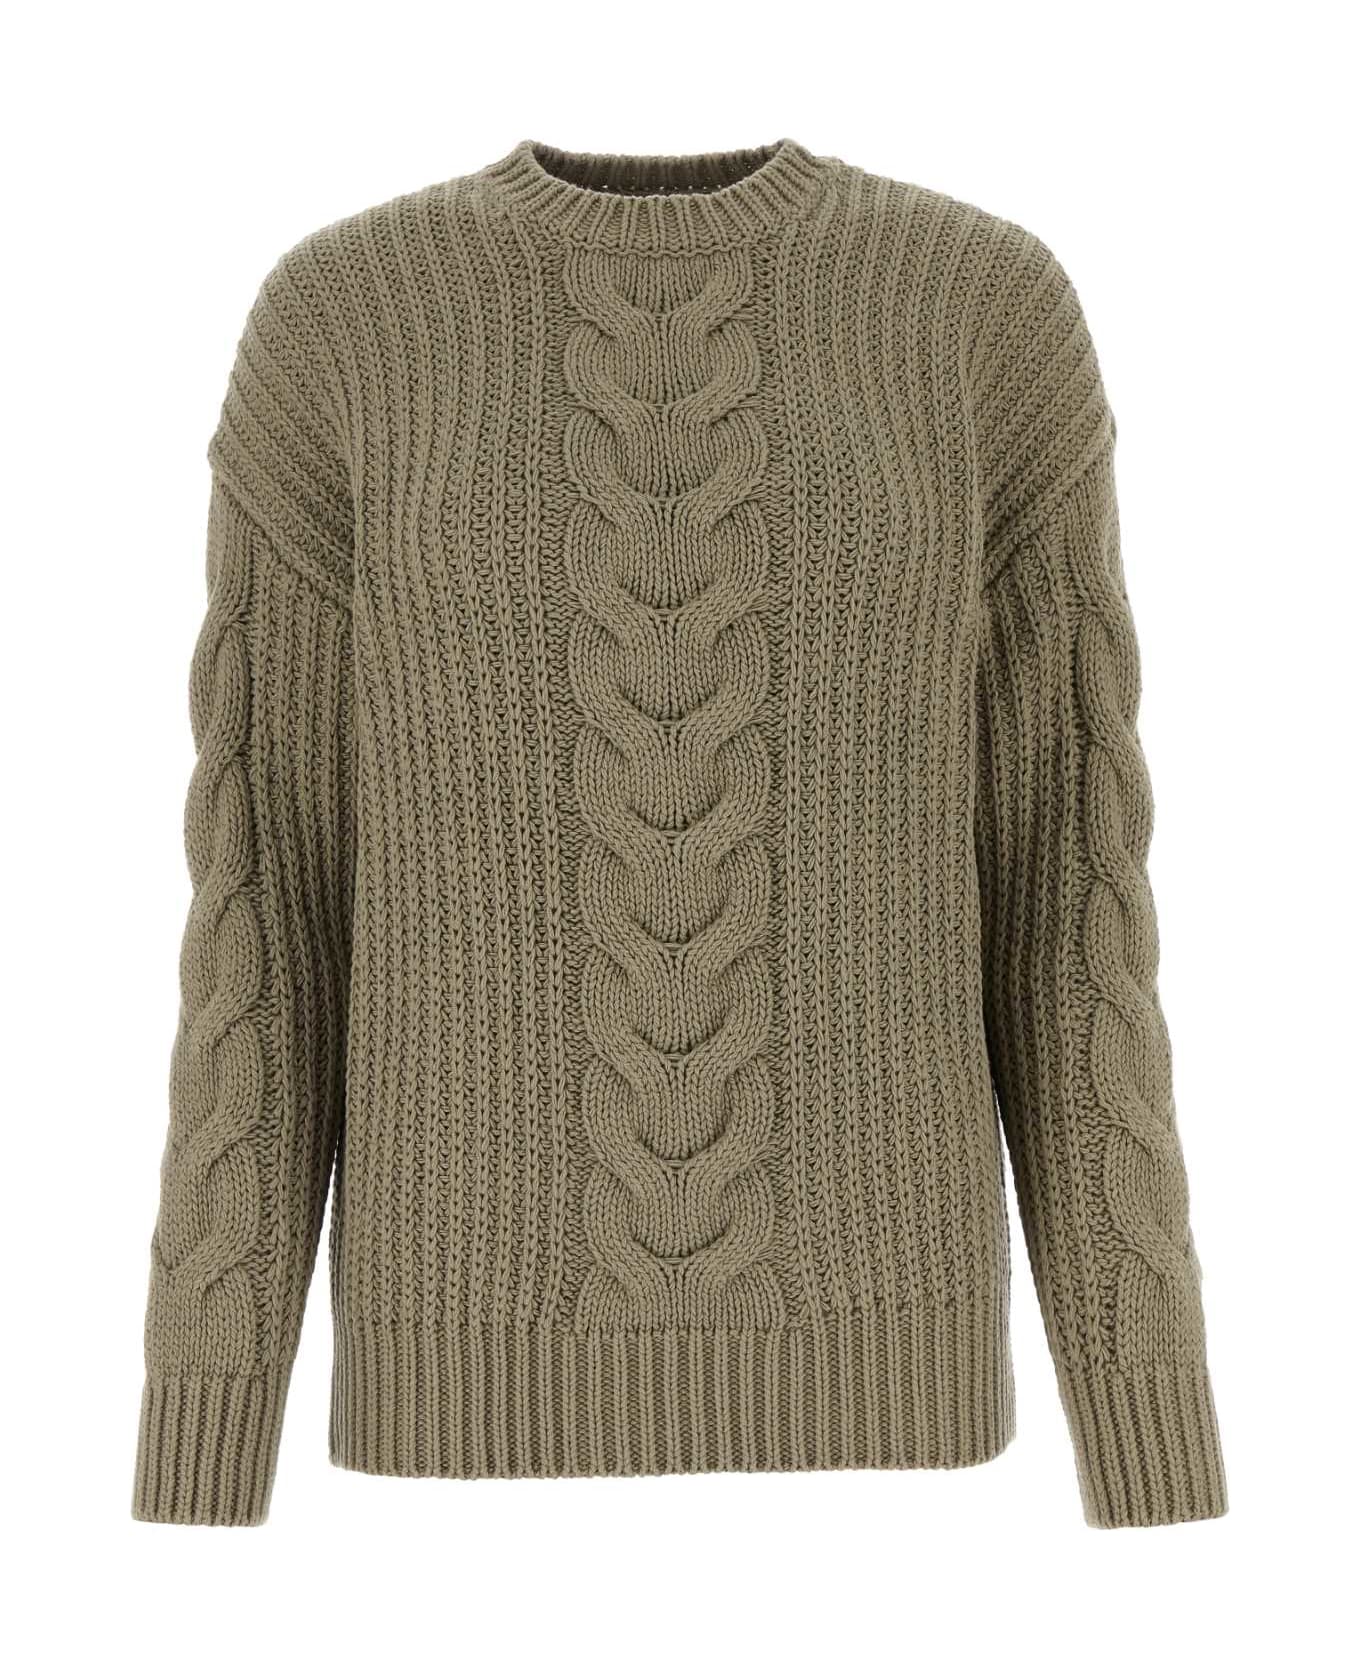 Max Mara Sage Green Cotton Acciaio Sweater - VERDEKAKI ニットウェア